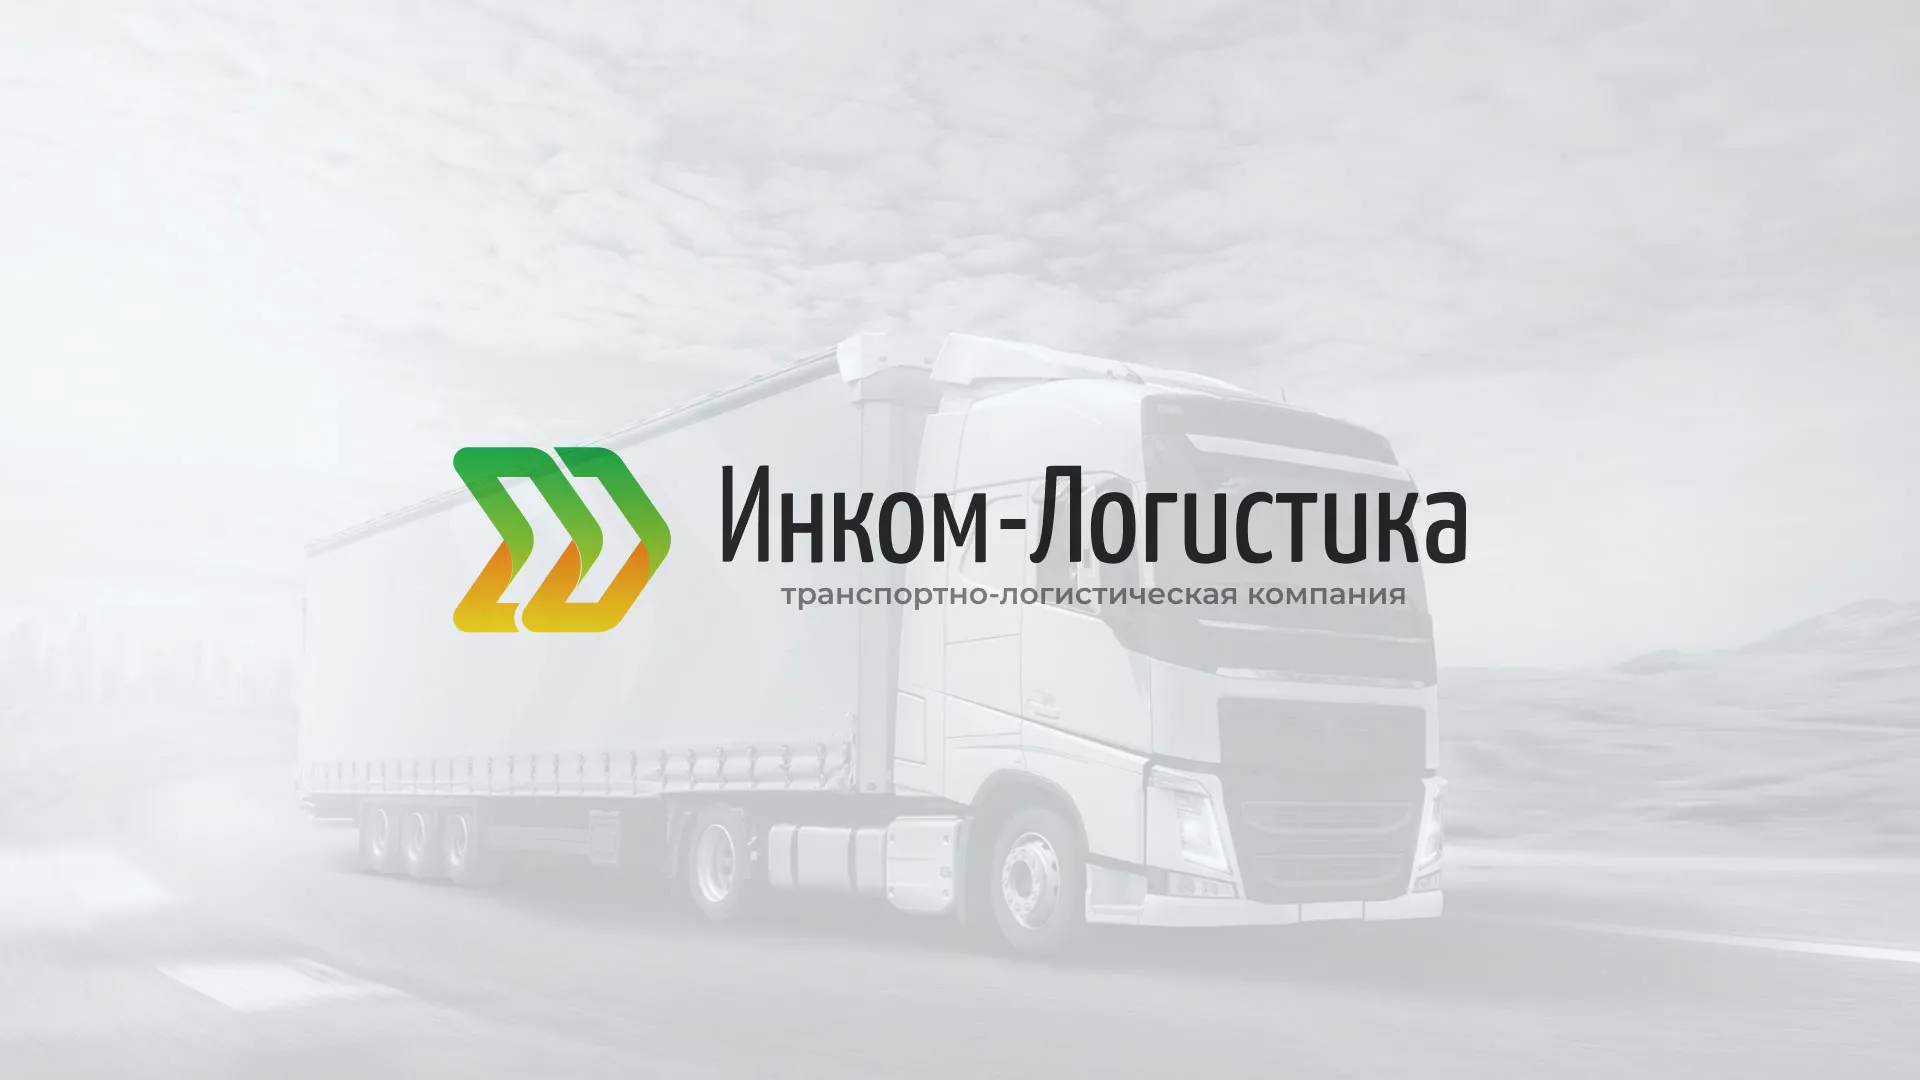 Разработка логотипа и сайта компании «Инком-Логистика» в Пионерском